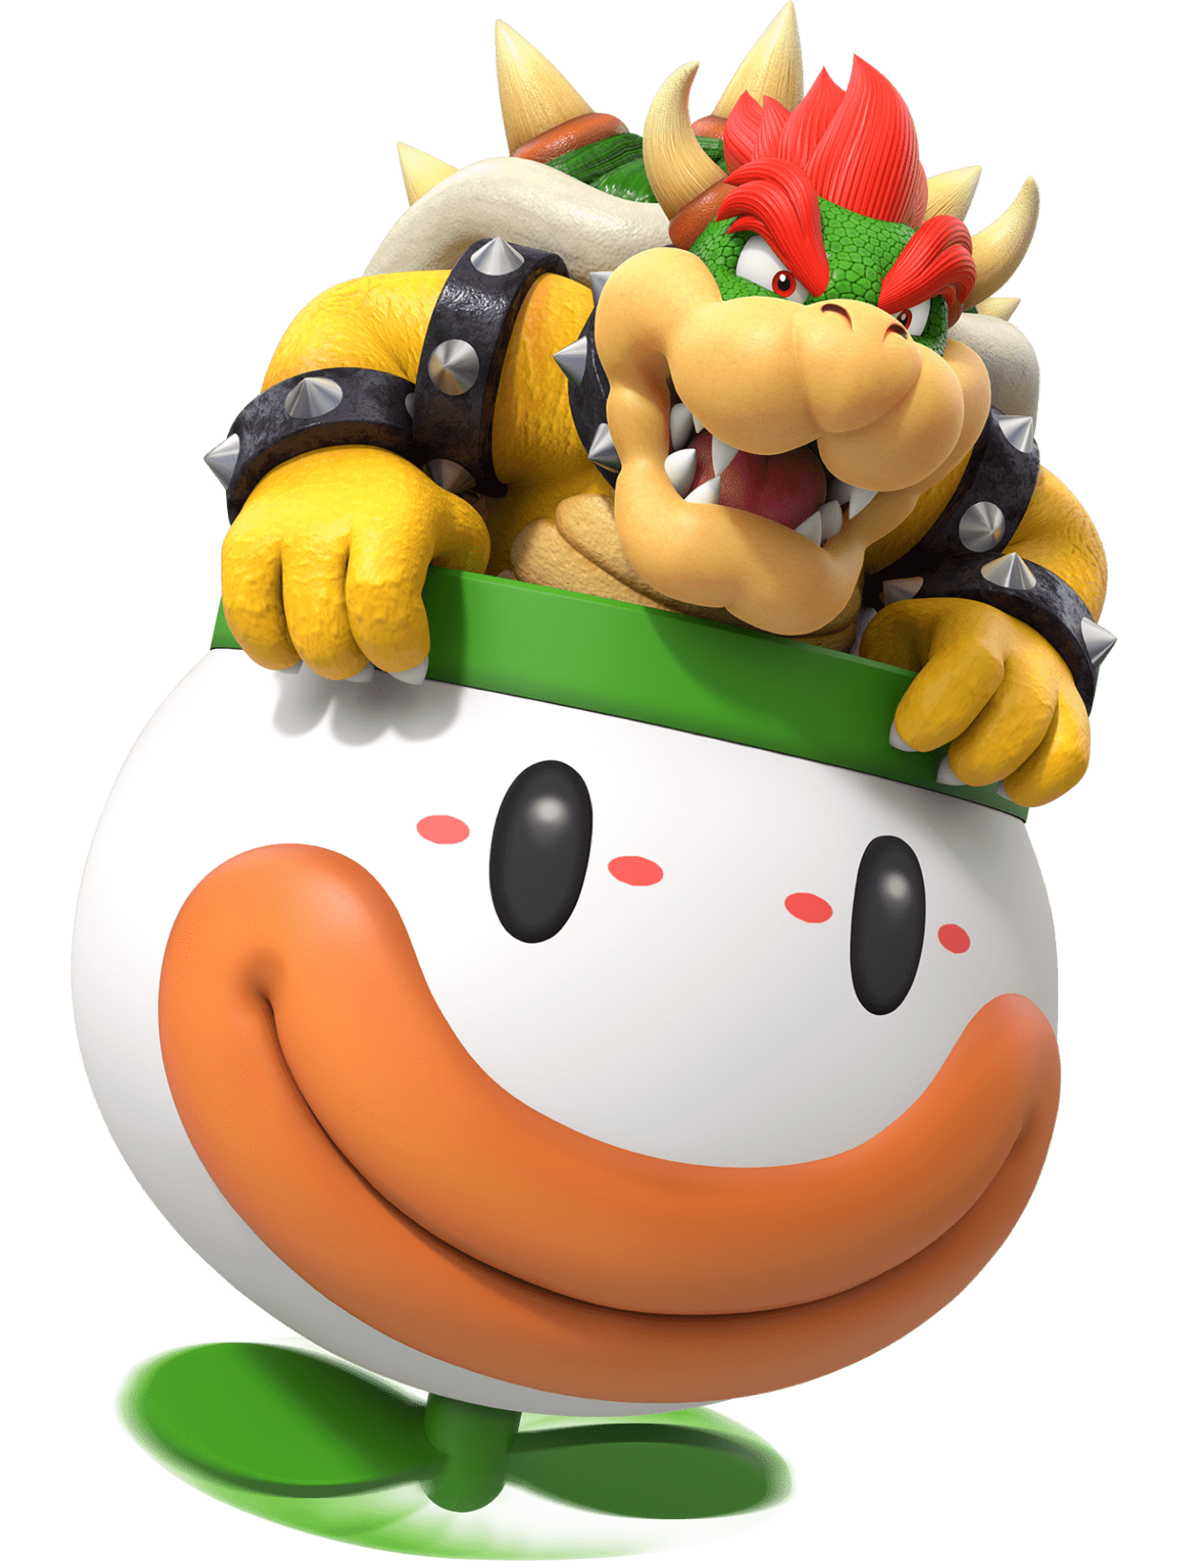 Super Mario Bowser Png Image - vrogue.co